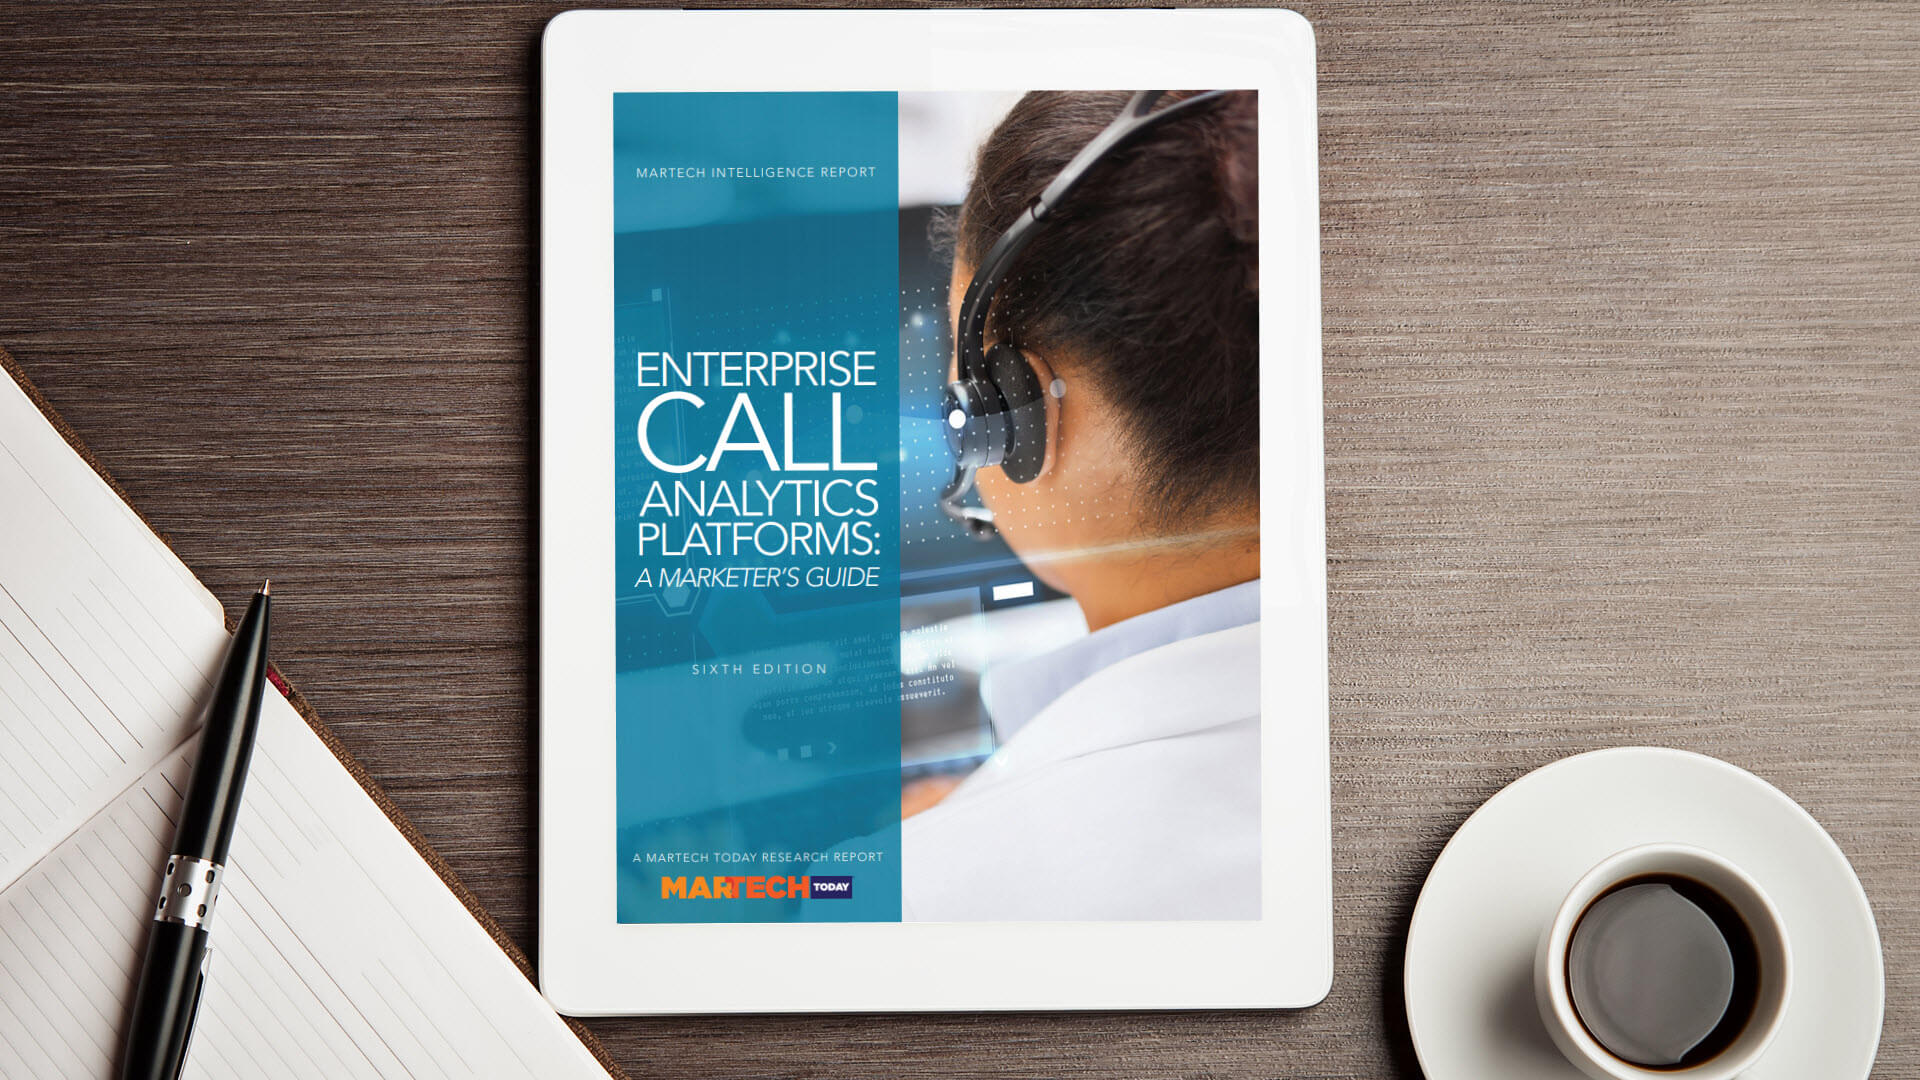 Plataformas de análisis de llamadas empresariales: una guía para especialistas en marketing, ¡actualizada para 2019!